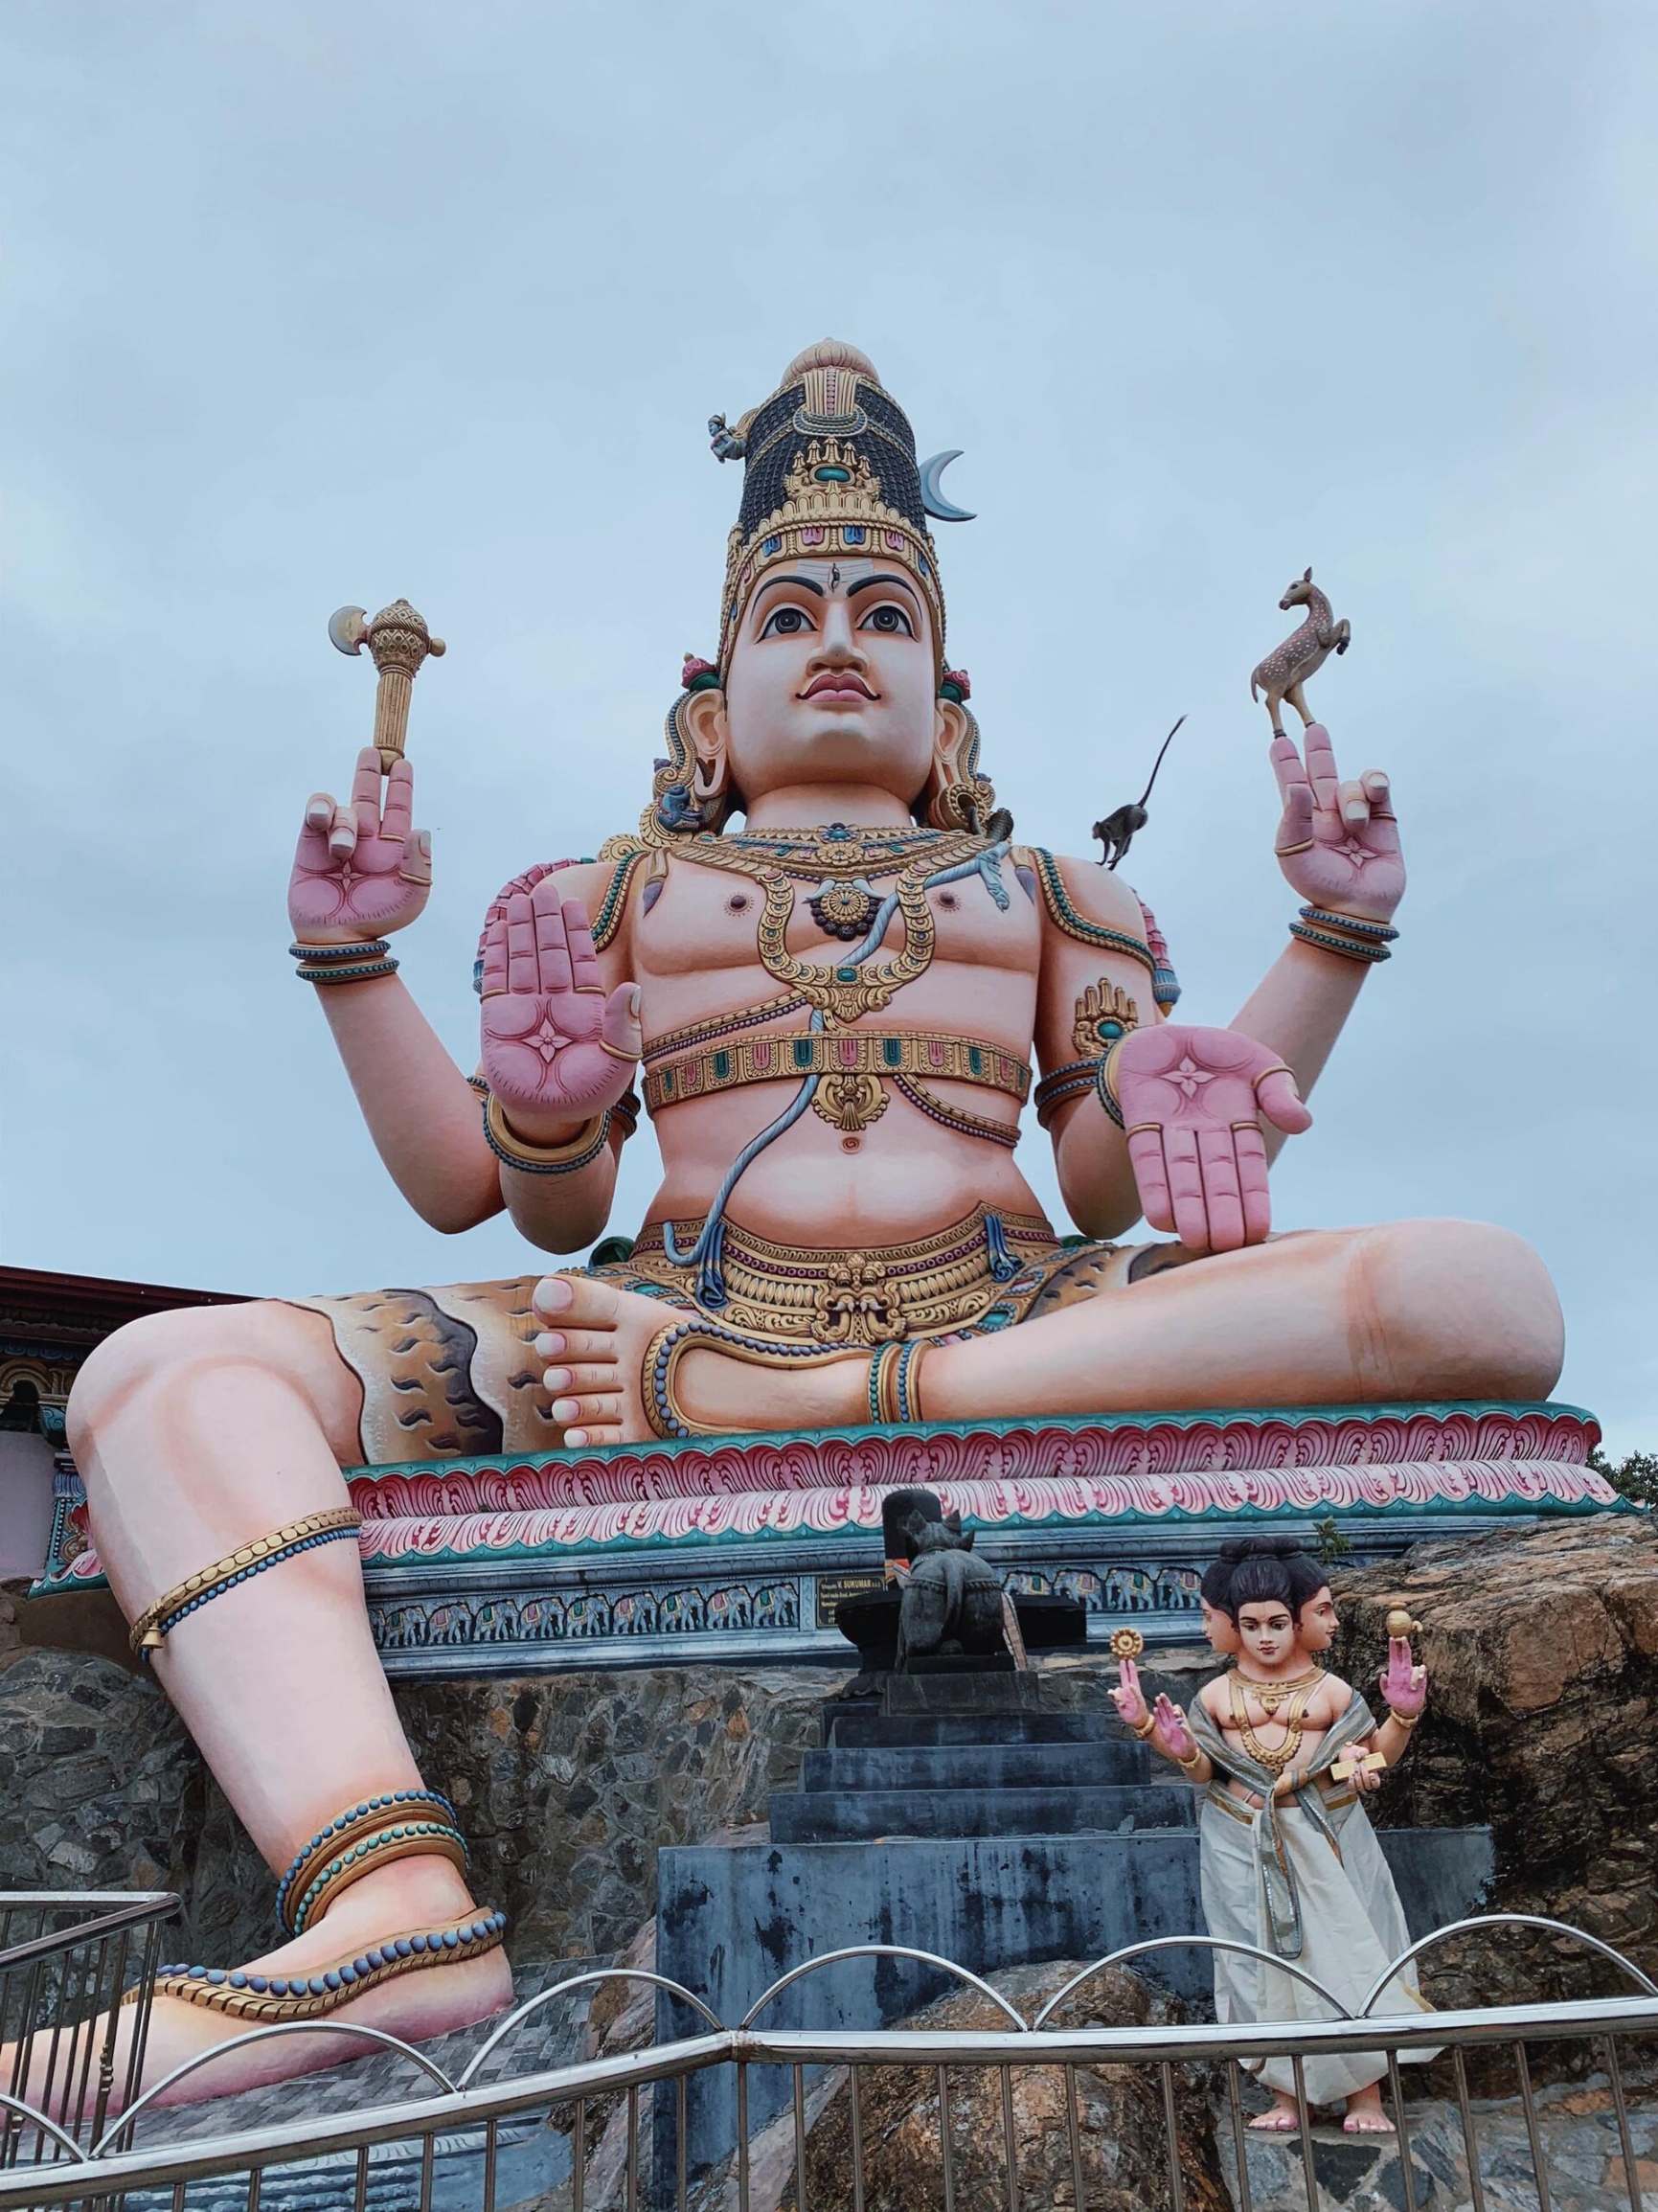 巨物恐惧症者请绕行，此篇为您介绍印度的神秘湿婆神像——世界上首个瑜伽士的纪念雕像，正是湿婆神，被誉为